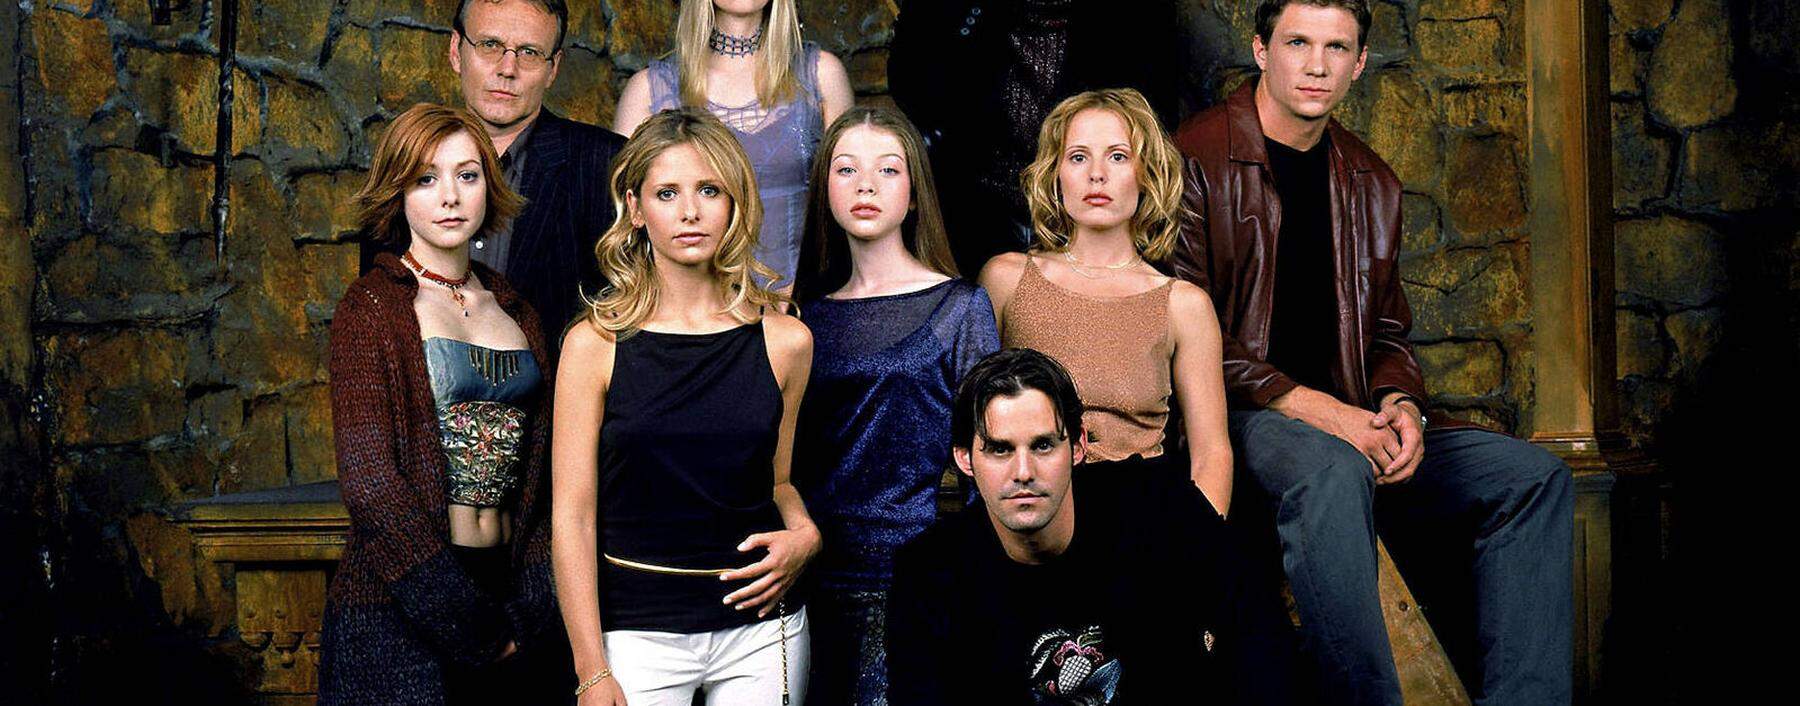 „Buffy“ verband ab 1997 Unterhaltung mit Tiefgang – und beschäftigte Kulturwissenschaftler.